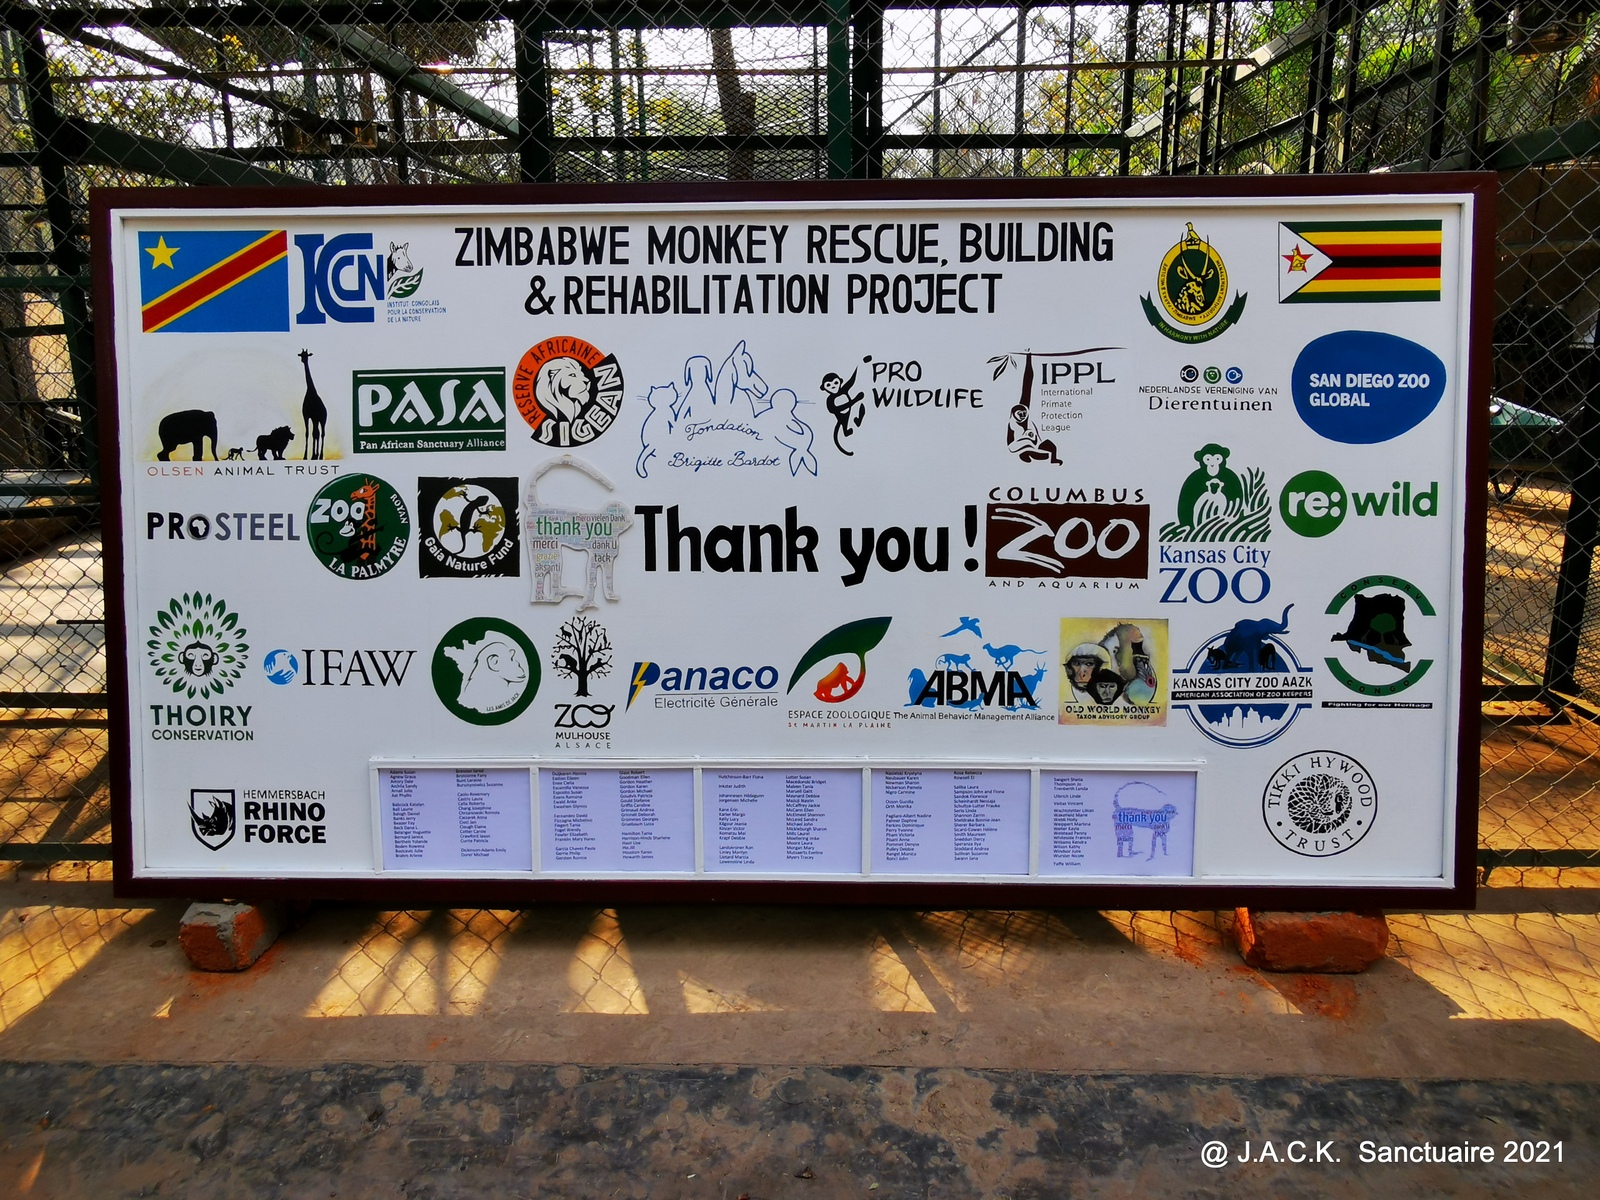 Updates on the Zimbabwe Monkey Rescue, Building & Rehabilitation Project